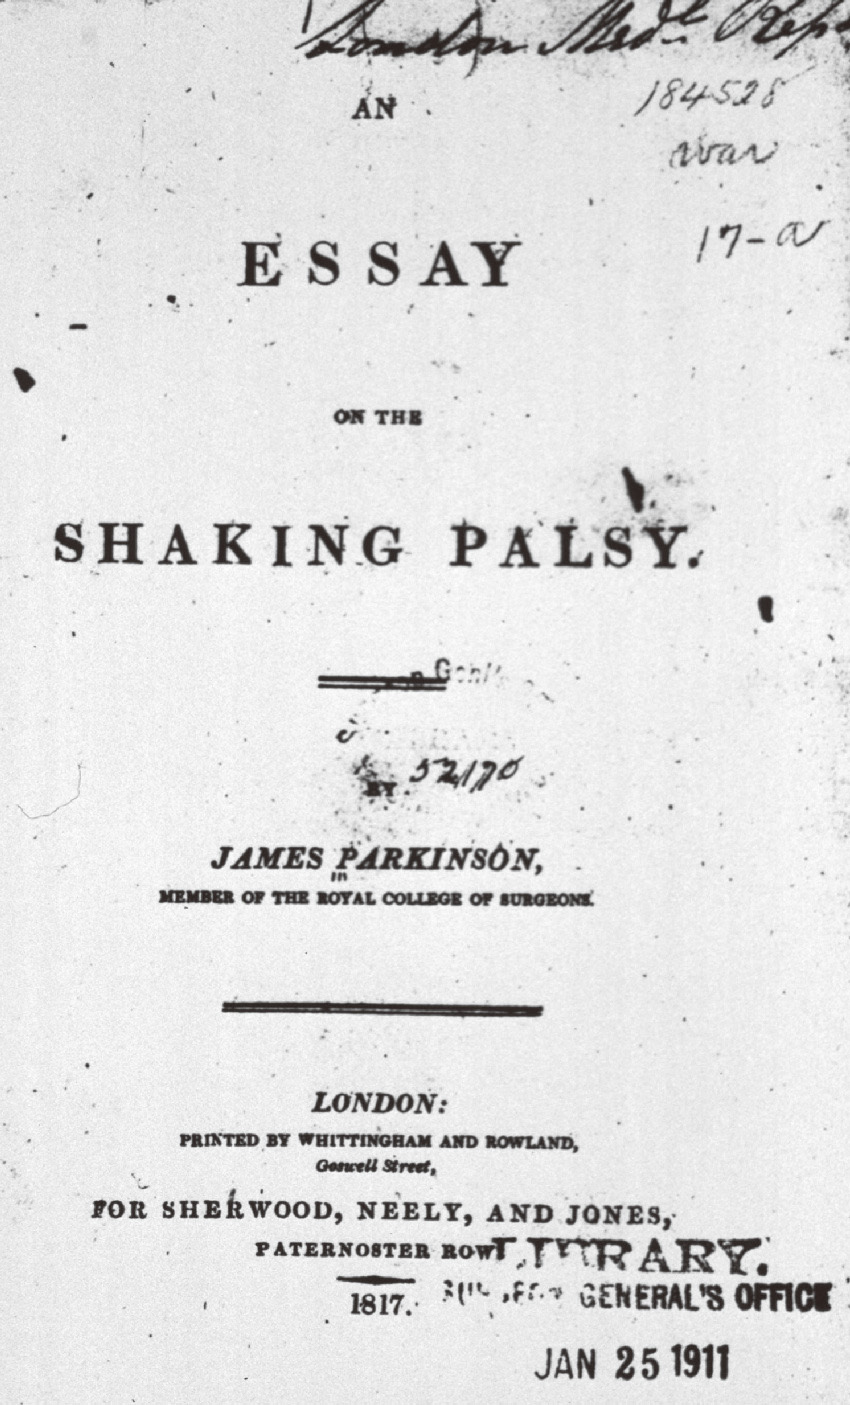 ⓔ図18-6-1　Essay on the Shaking Palsy現存する原著の表紙 (NIH Library蔵書) 